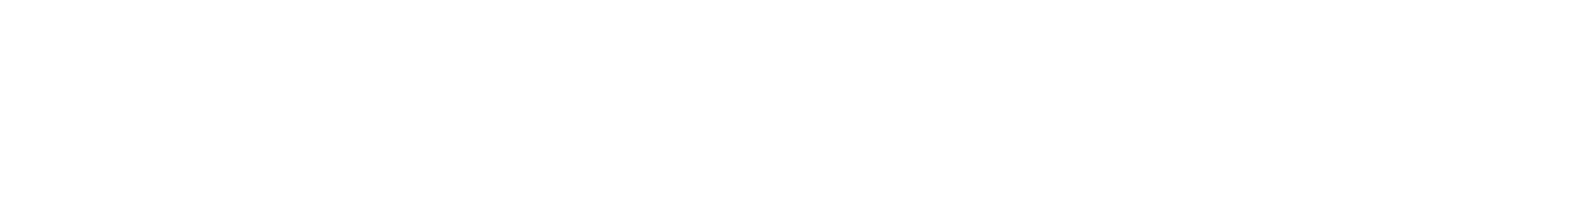 AFC Gamma logo large for dark backgrounds (transparent PNG)